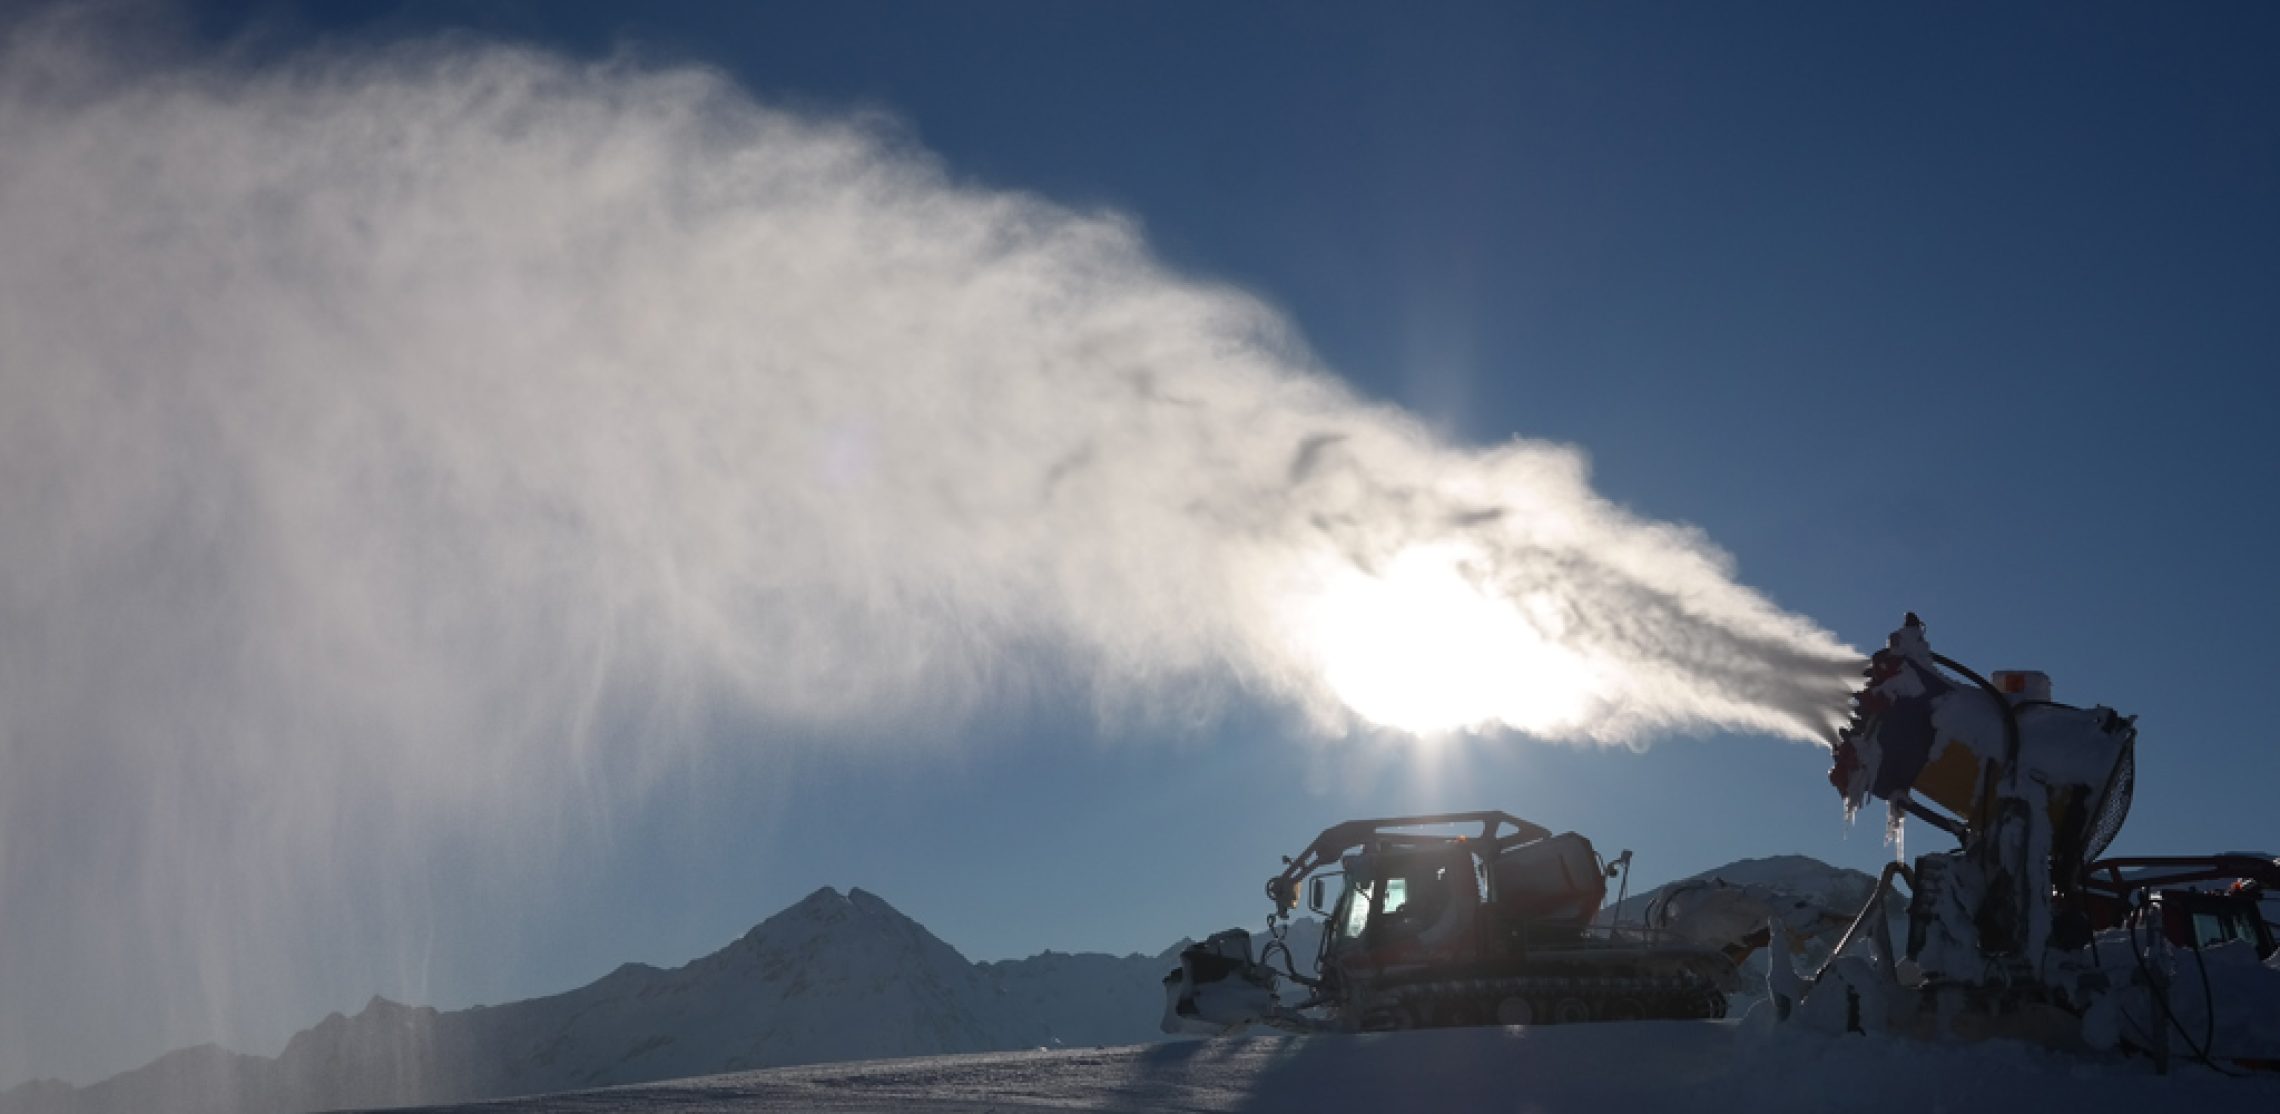 Schneekanone im Einsatz - Wintersport in den Alpen: Schnee 4.0 vs. Klimawandel